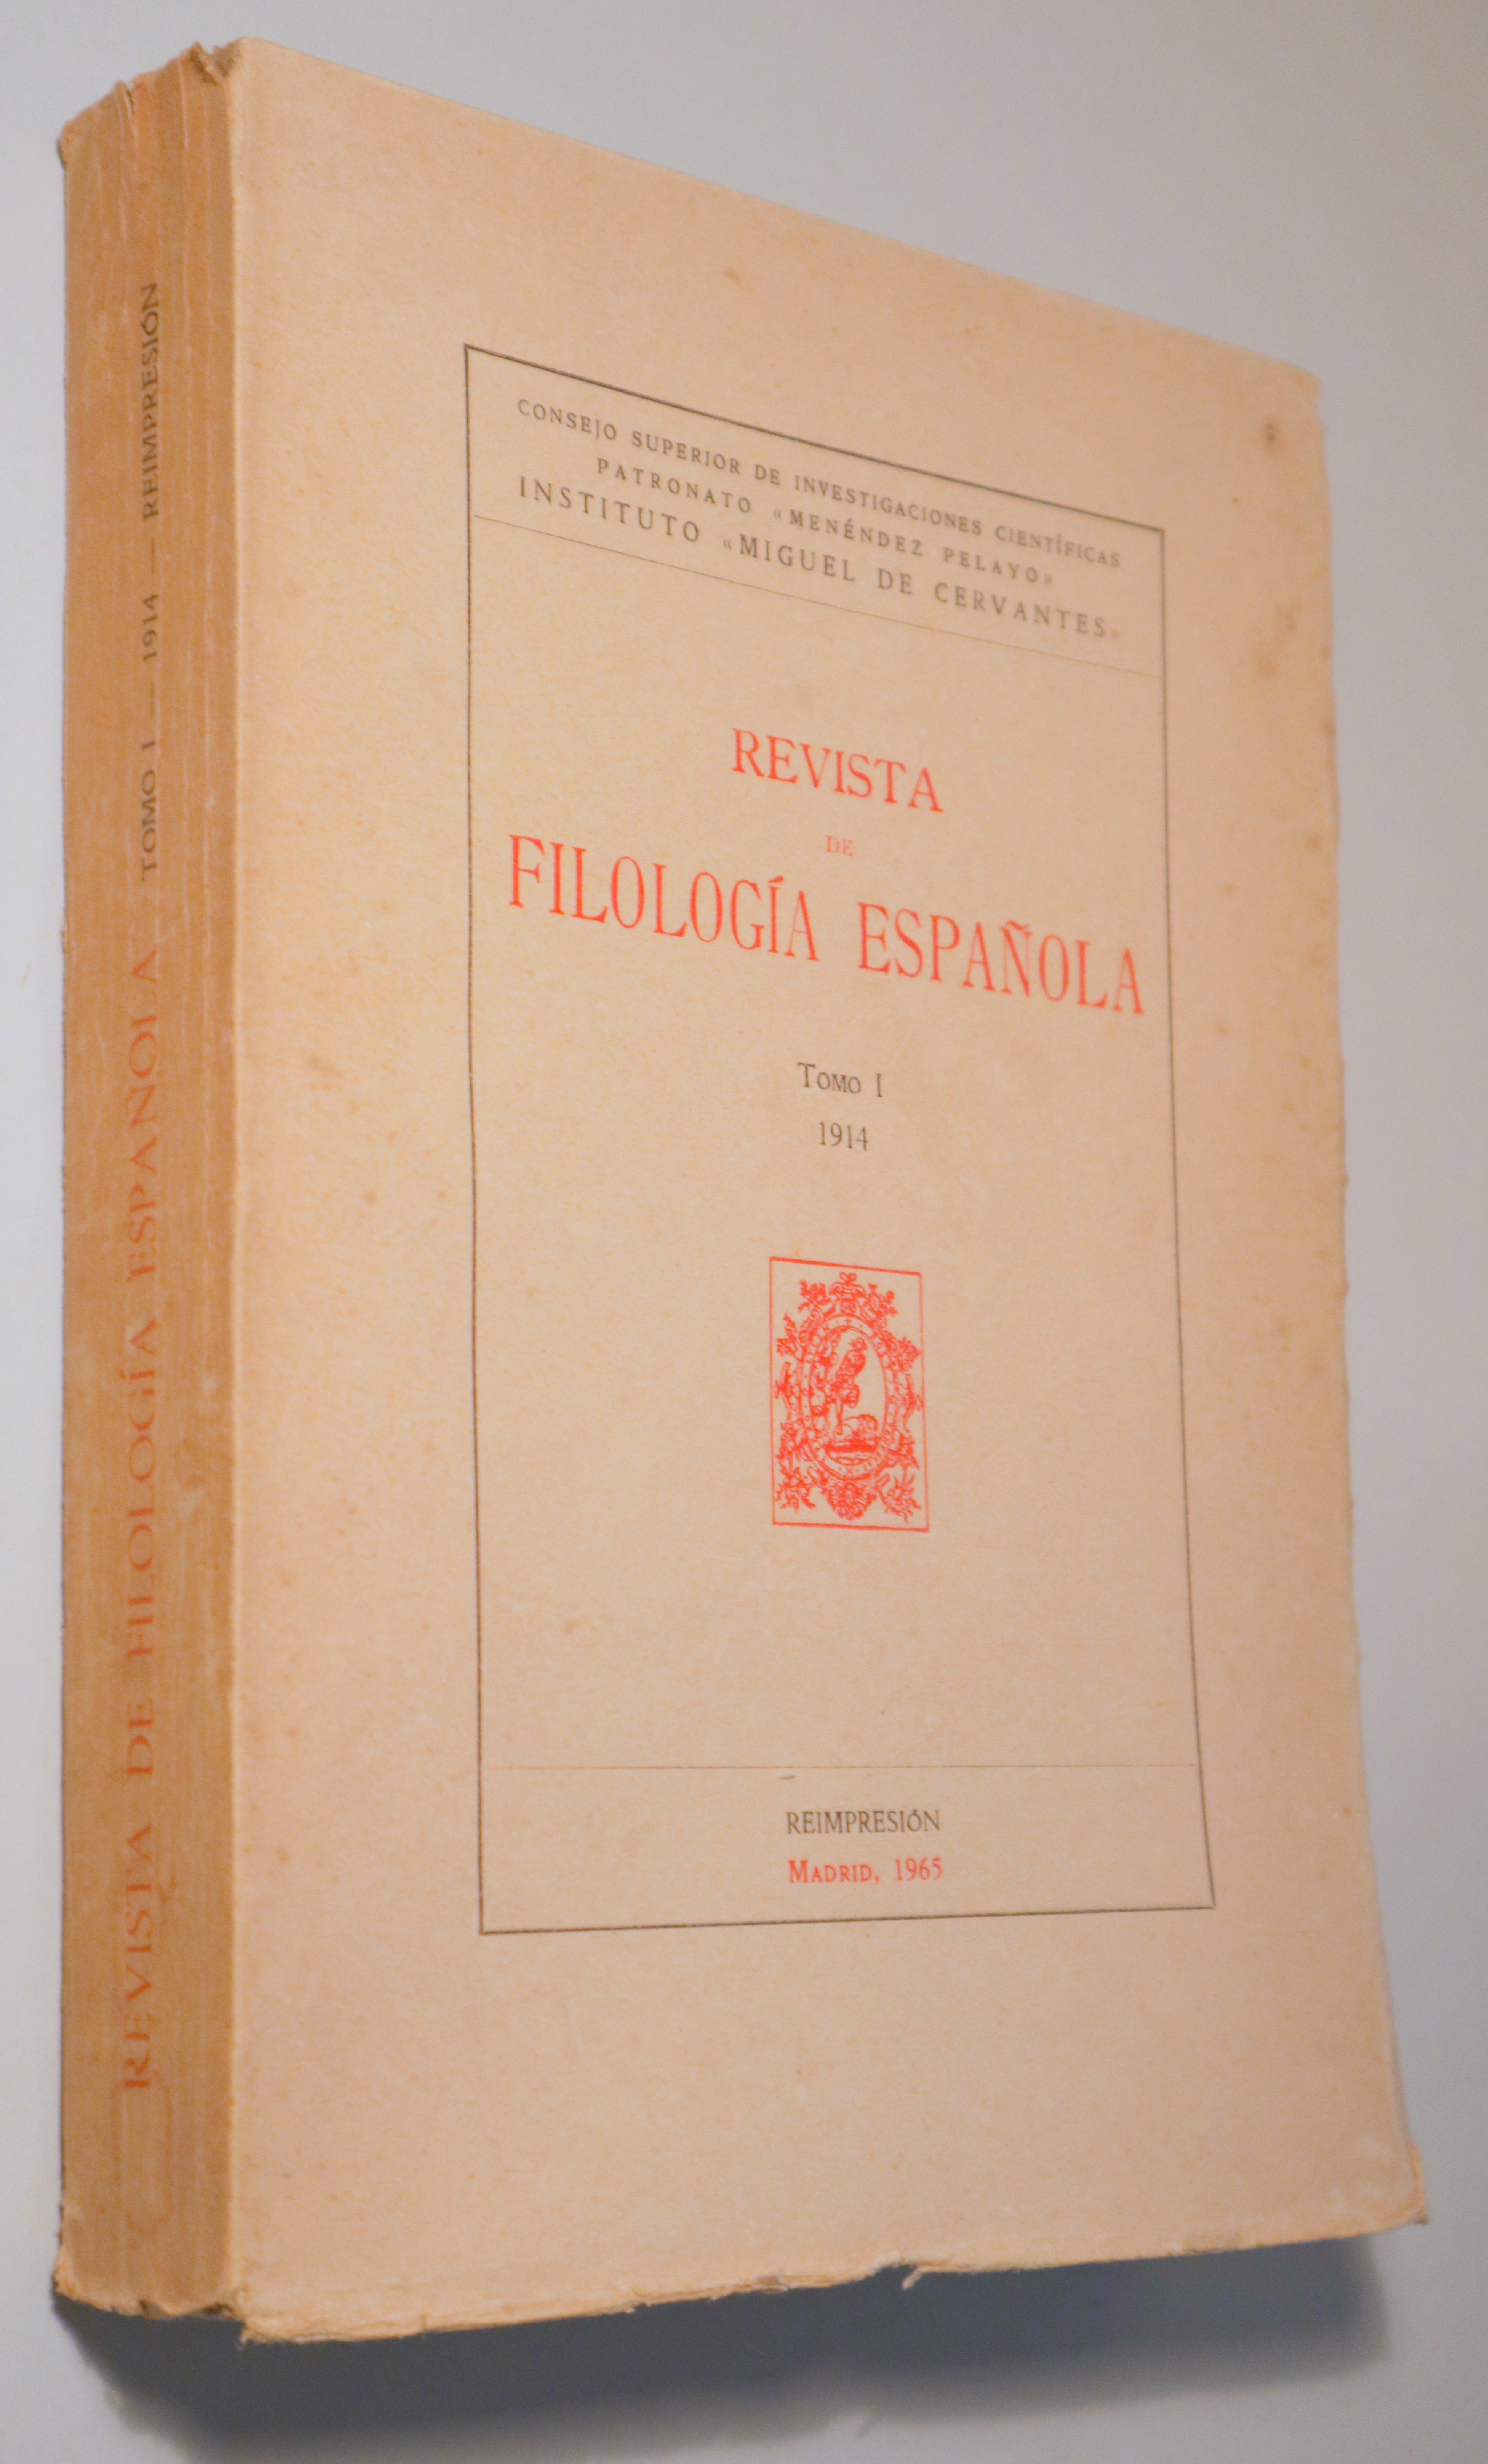 REVISTA DE FILOLOGÍA ESPAÑOLA. Tomo I 1914 - Madrid 1965 - Reimpresión